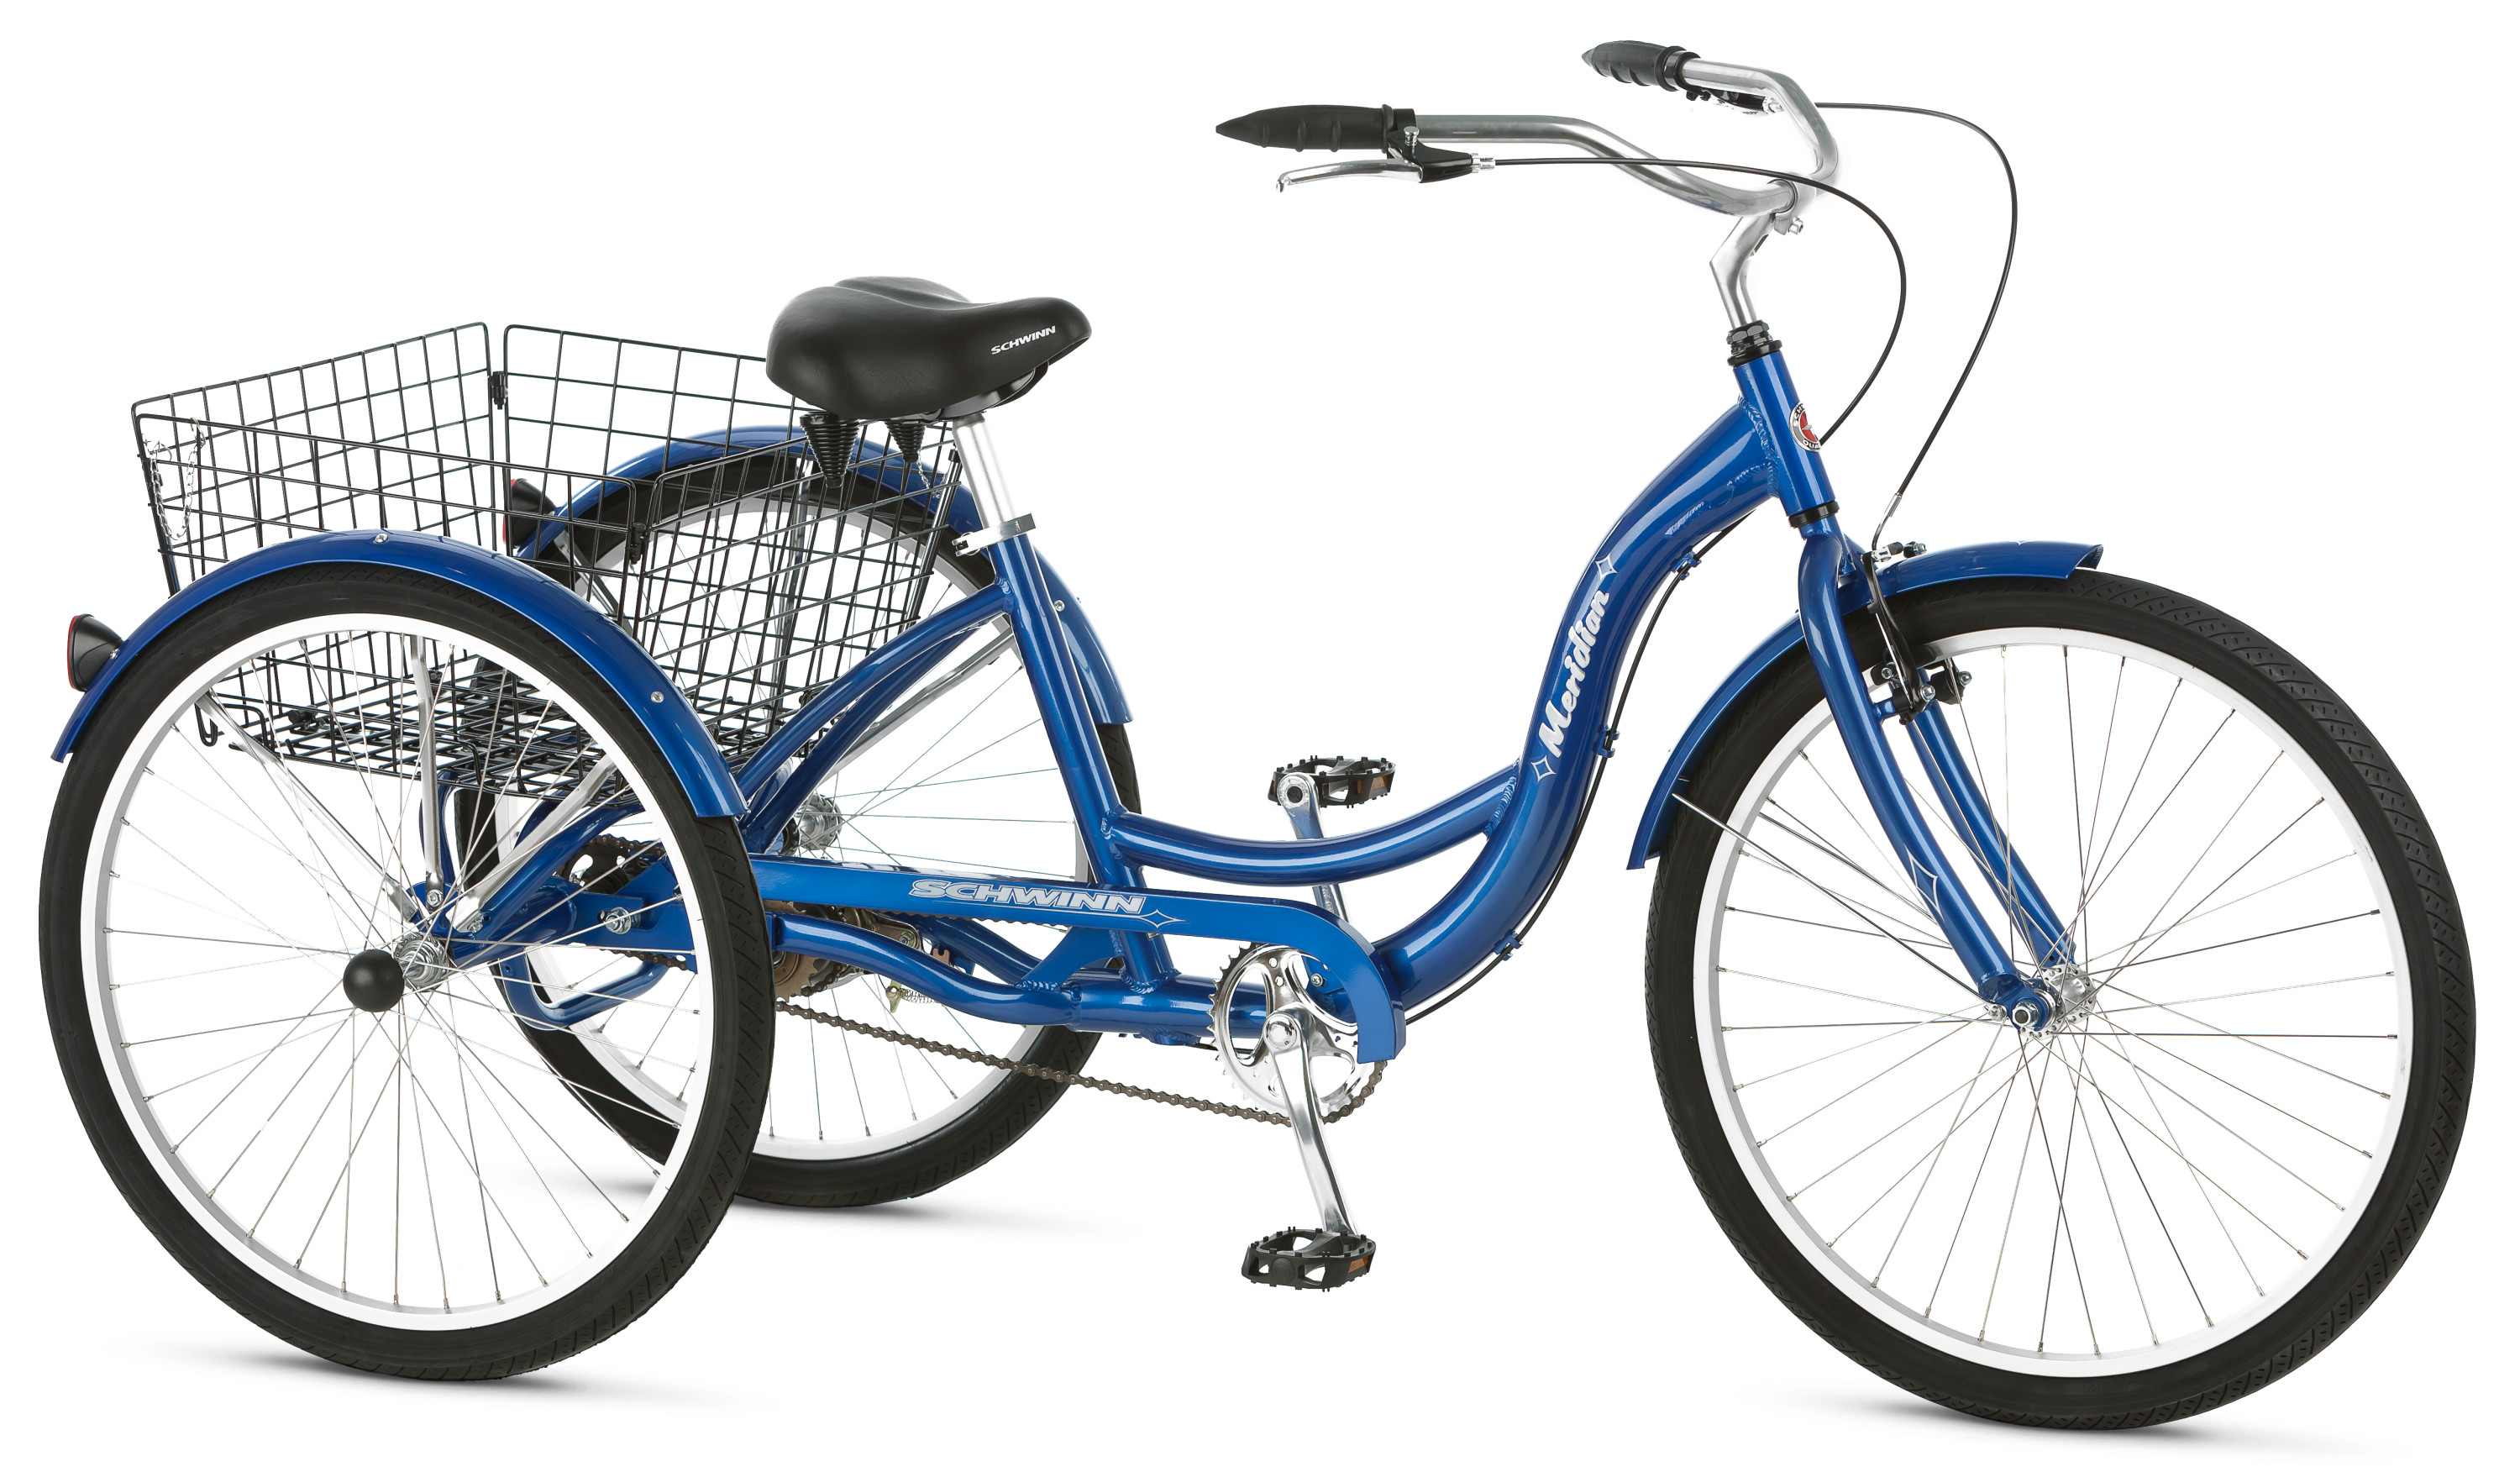 Schwinn Meridian Adult Tricycle, 26-inch wheels, rear storage basket, Blue - image 1 of 6